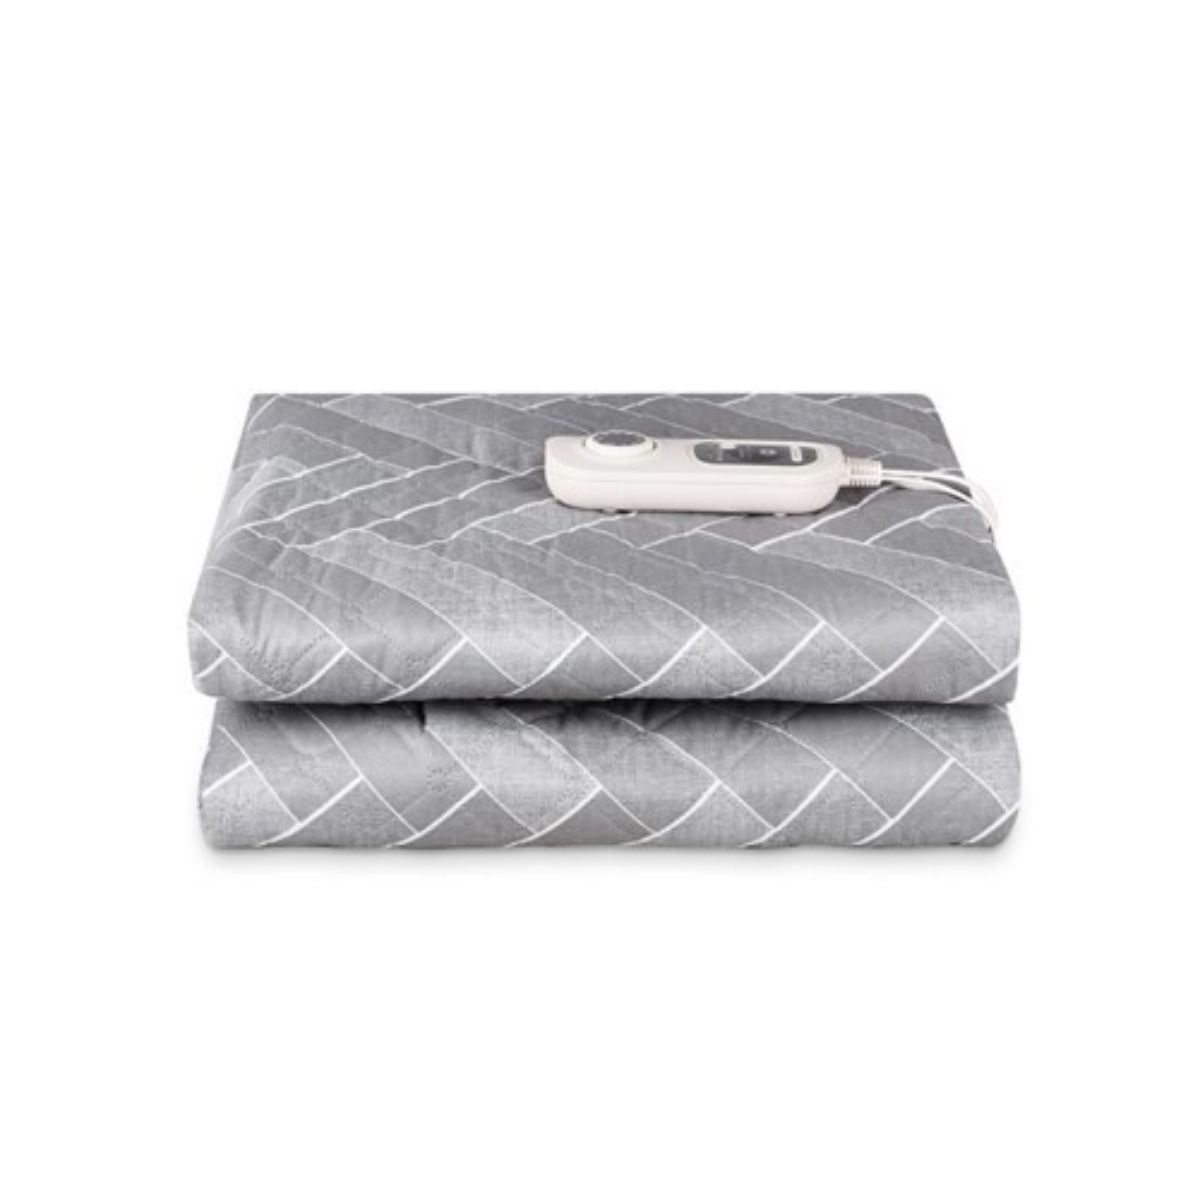 Shinil Electric Blanket - Mattress - SEB-120SJ - Grey